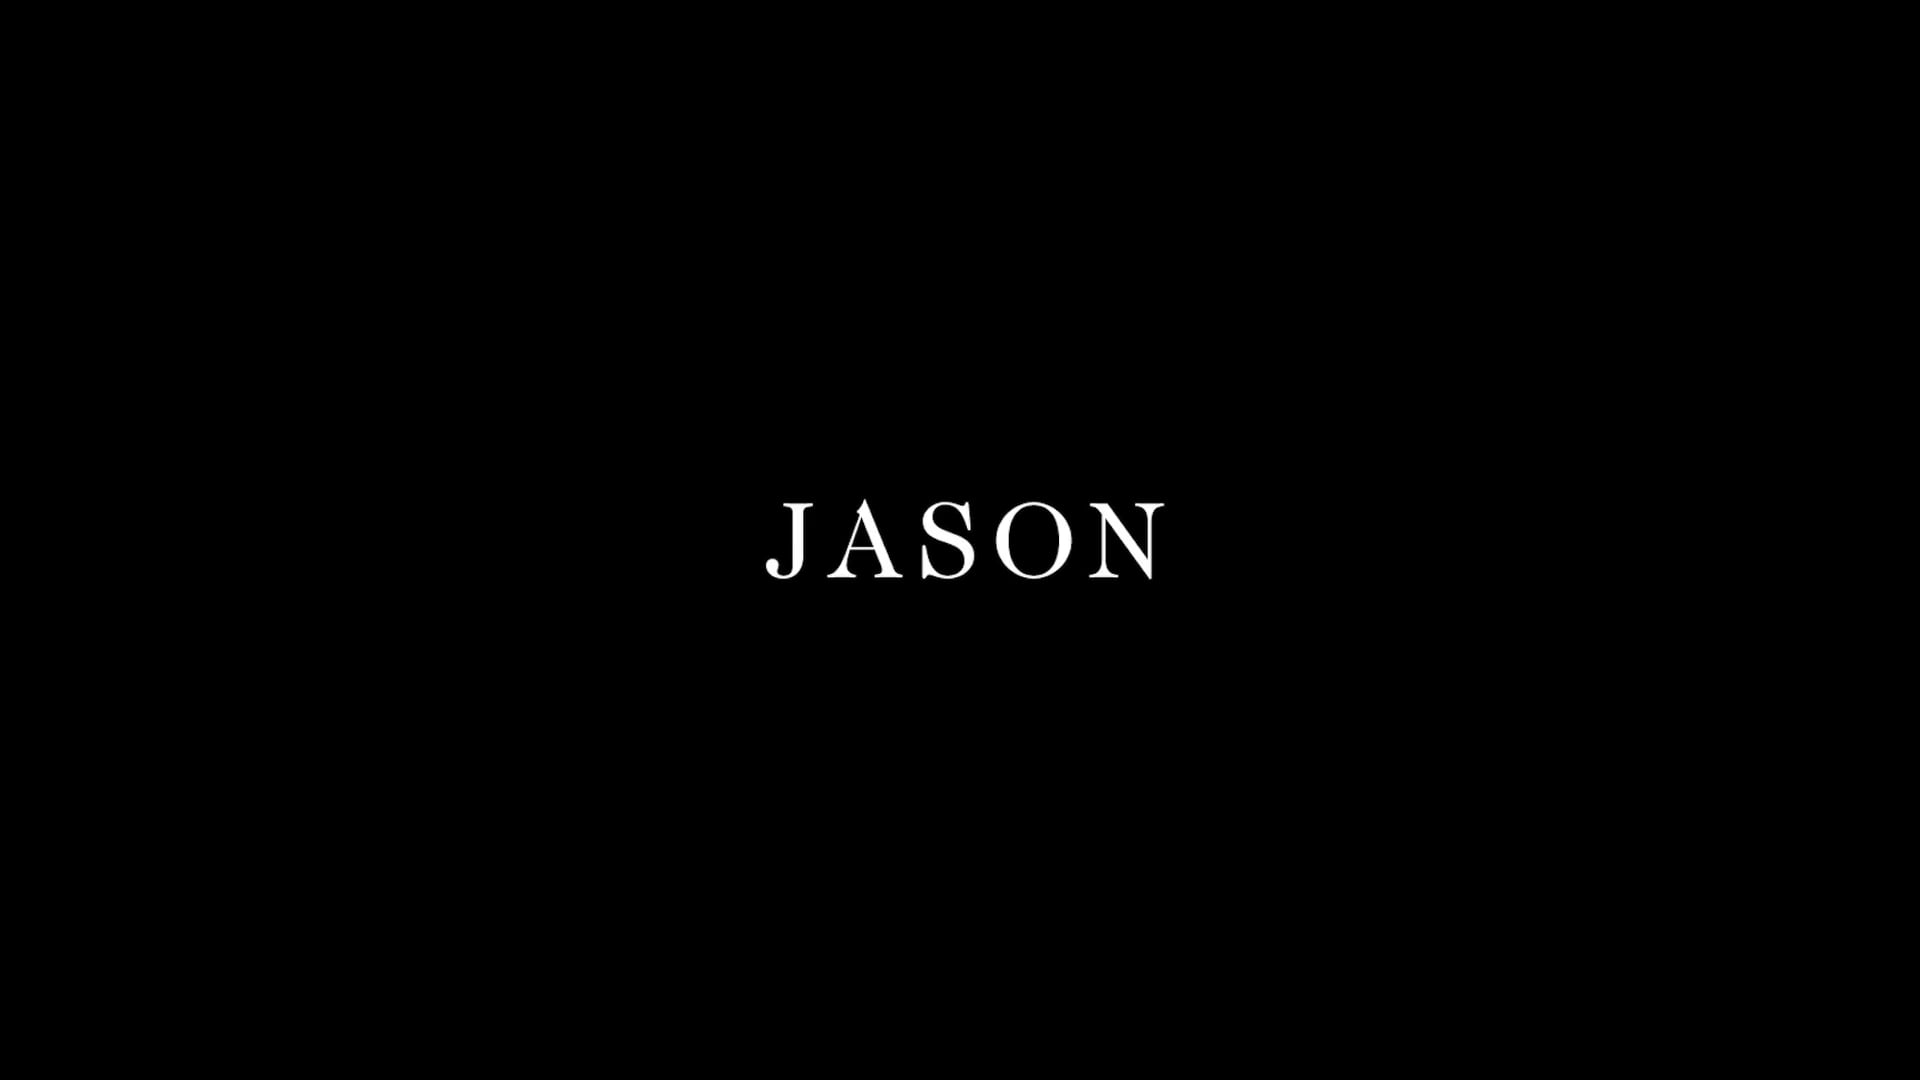 Jason - VOF